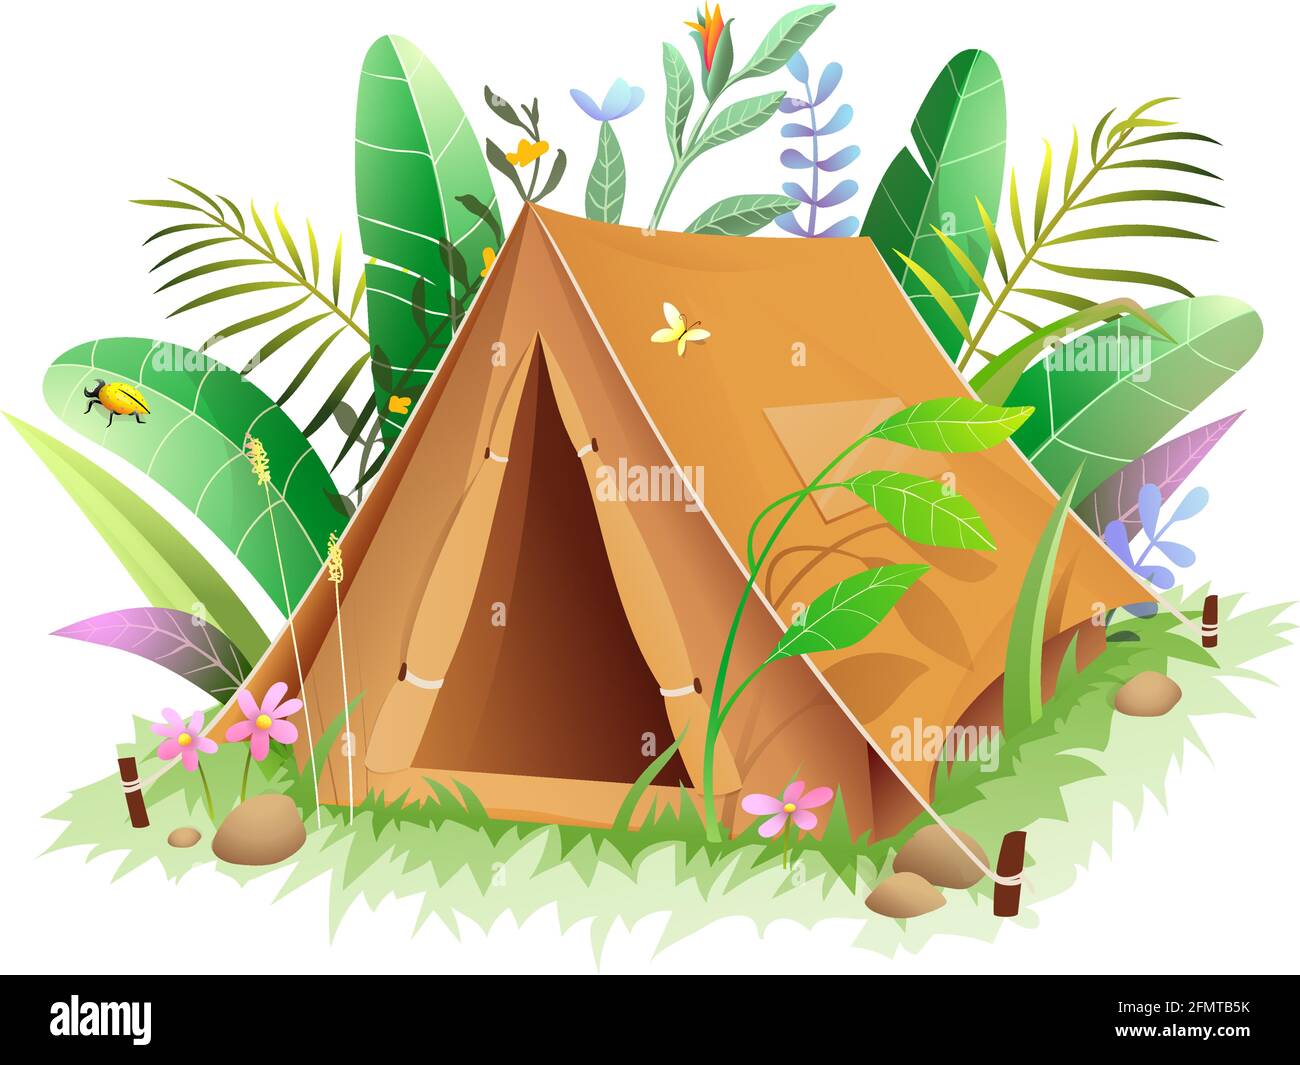 Zelt-Ikone im Dschungel oder Wald in grünen Blättern Stock Vektor